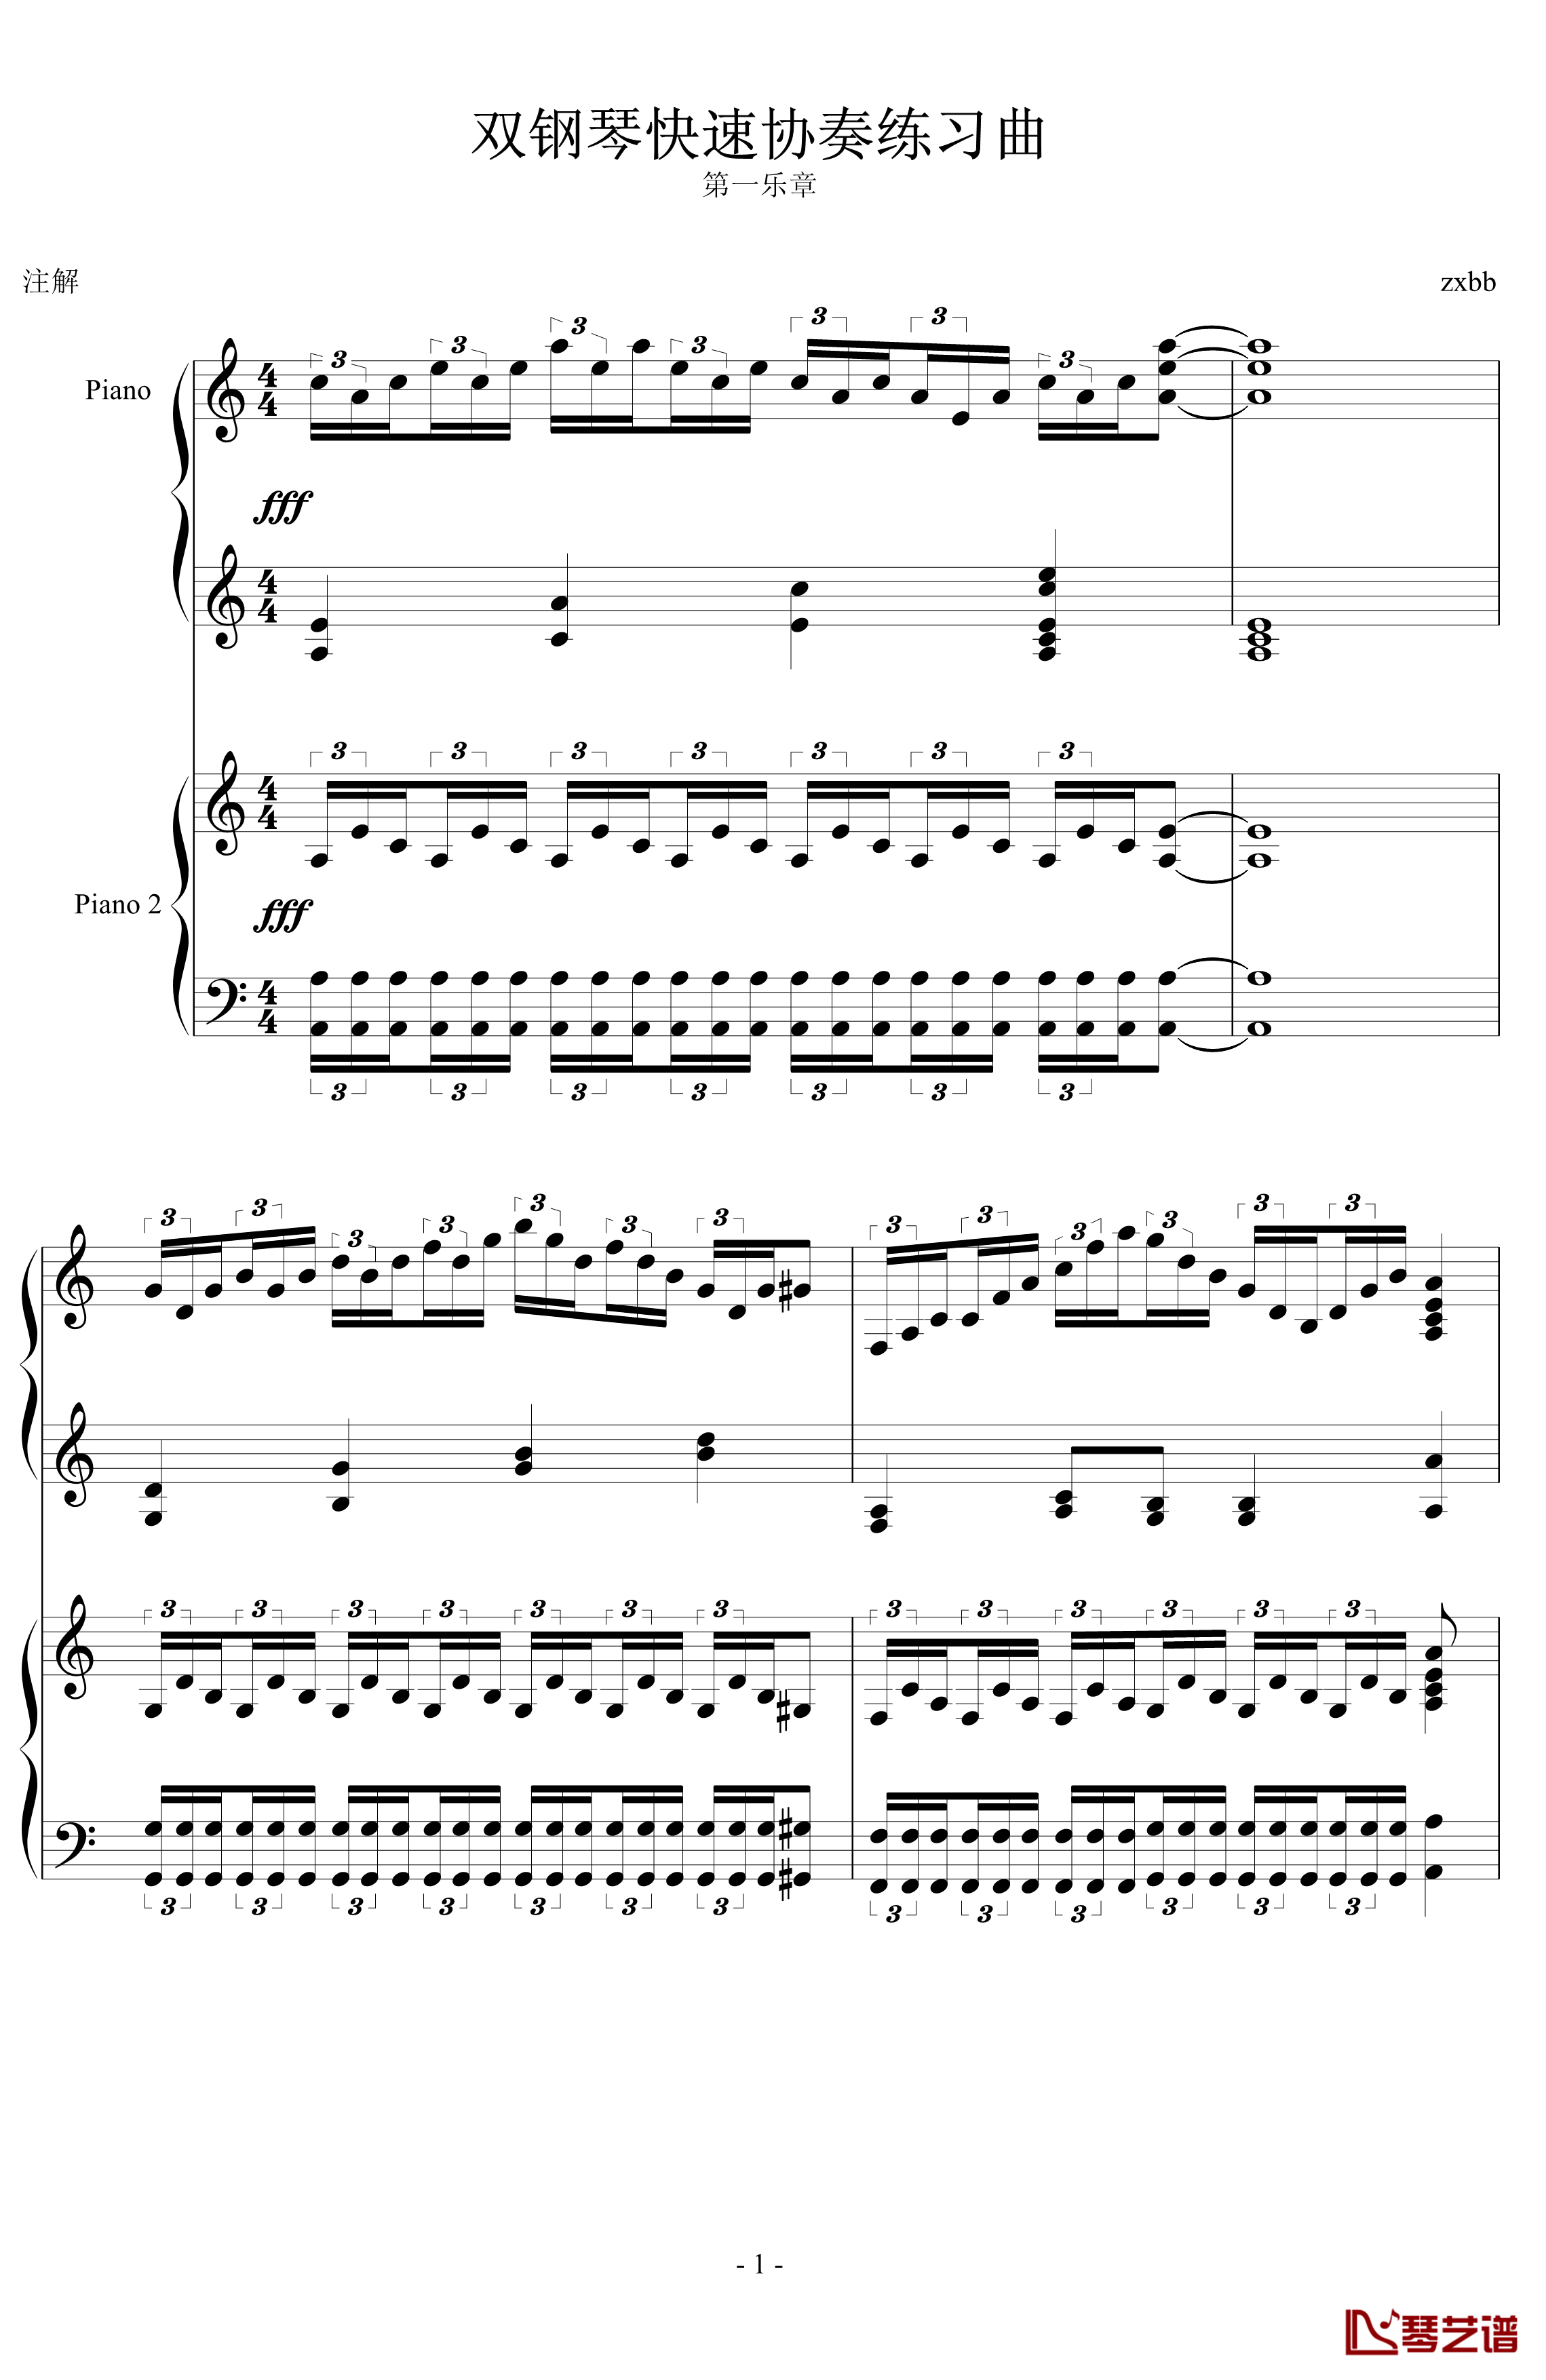 双钢琴快速协奏练习曲钢琴谱-zxbb1